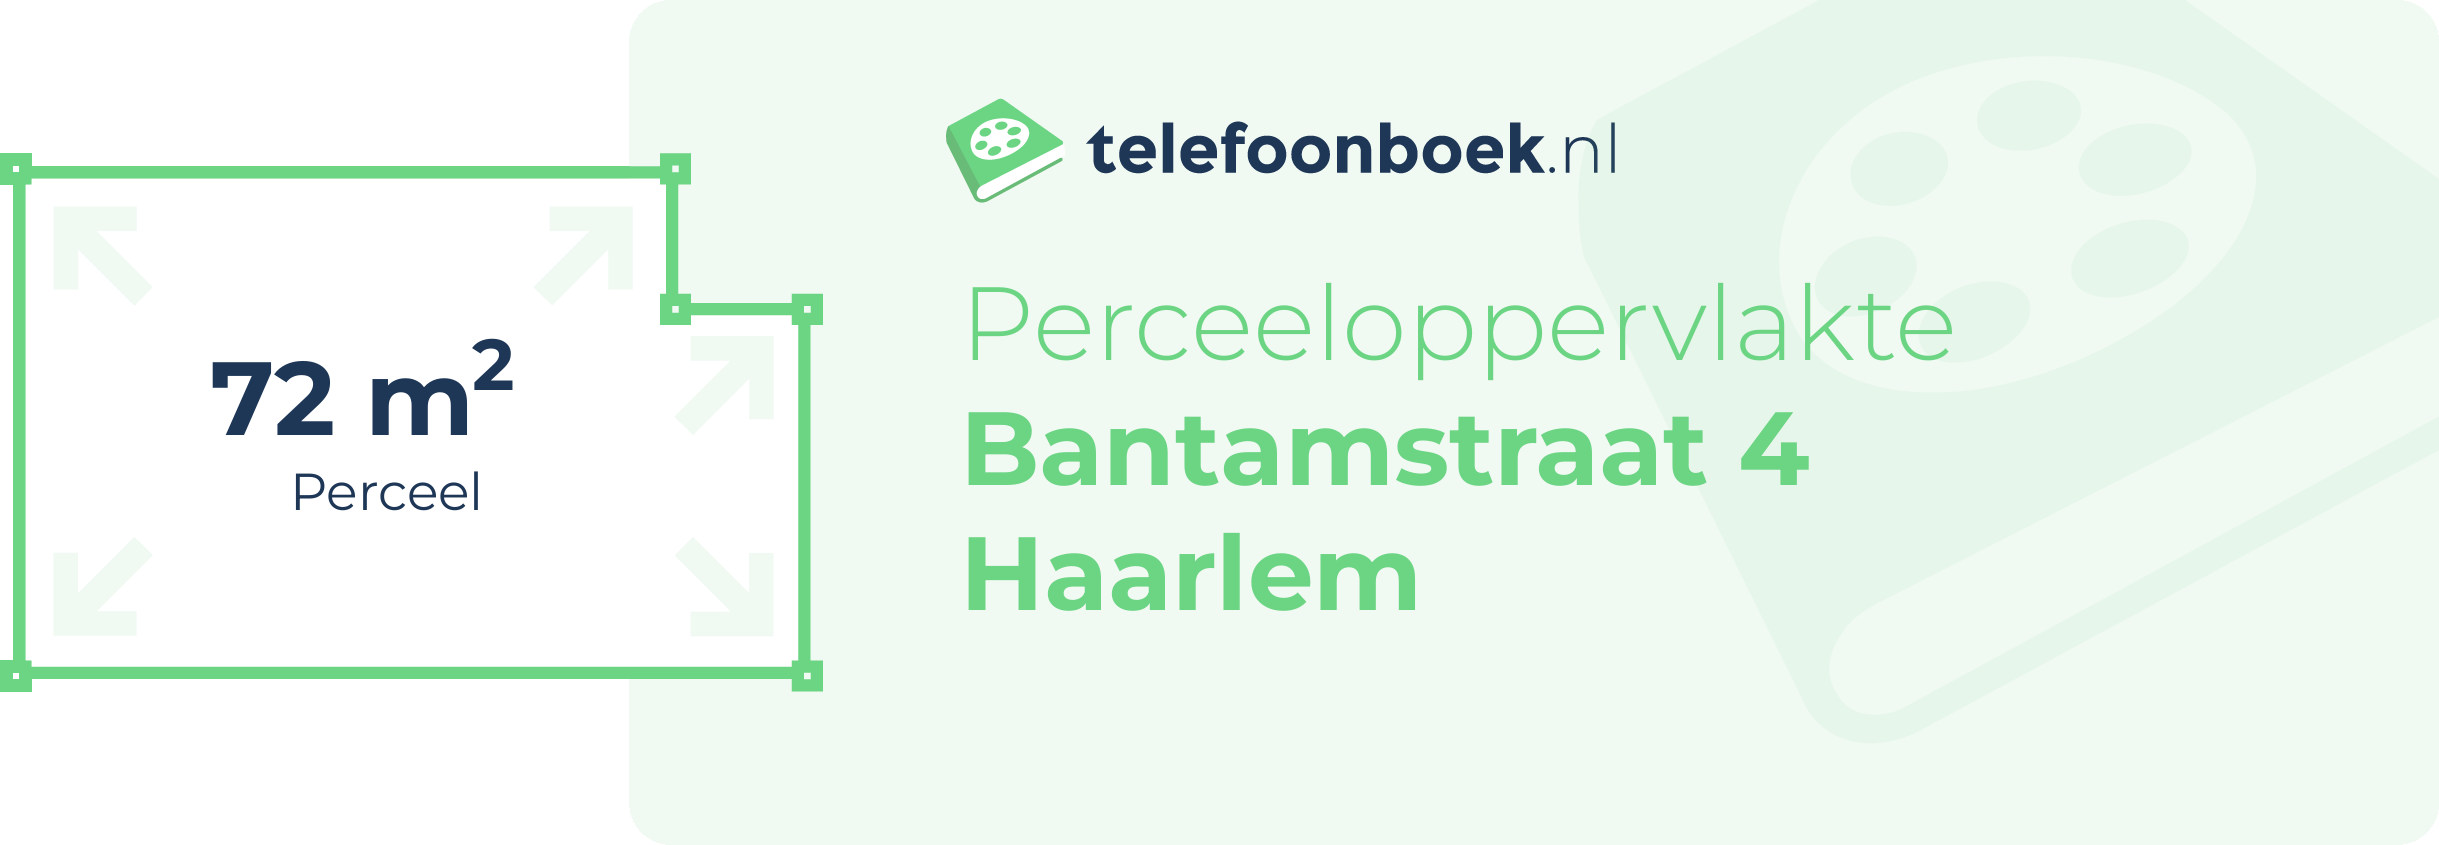 Perceeloppervlakte Bantamstraat 4 Haarlem